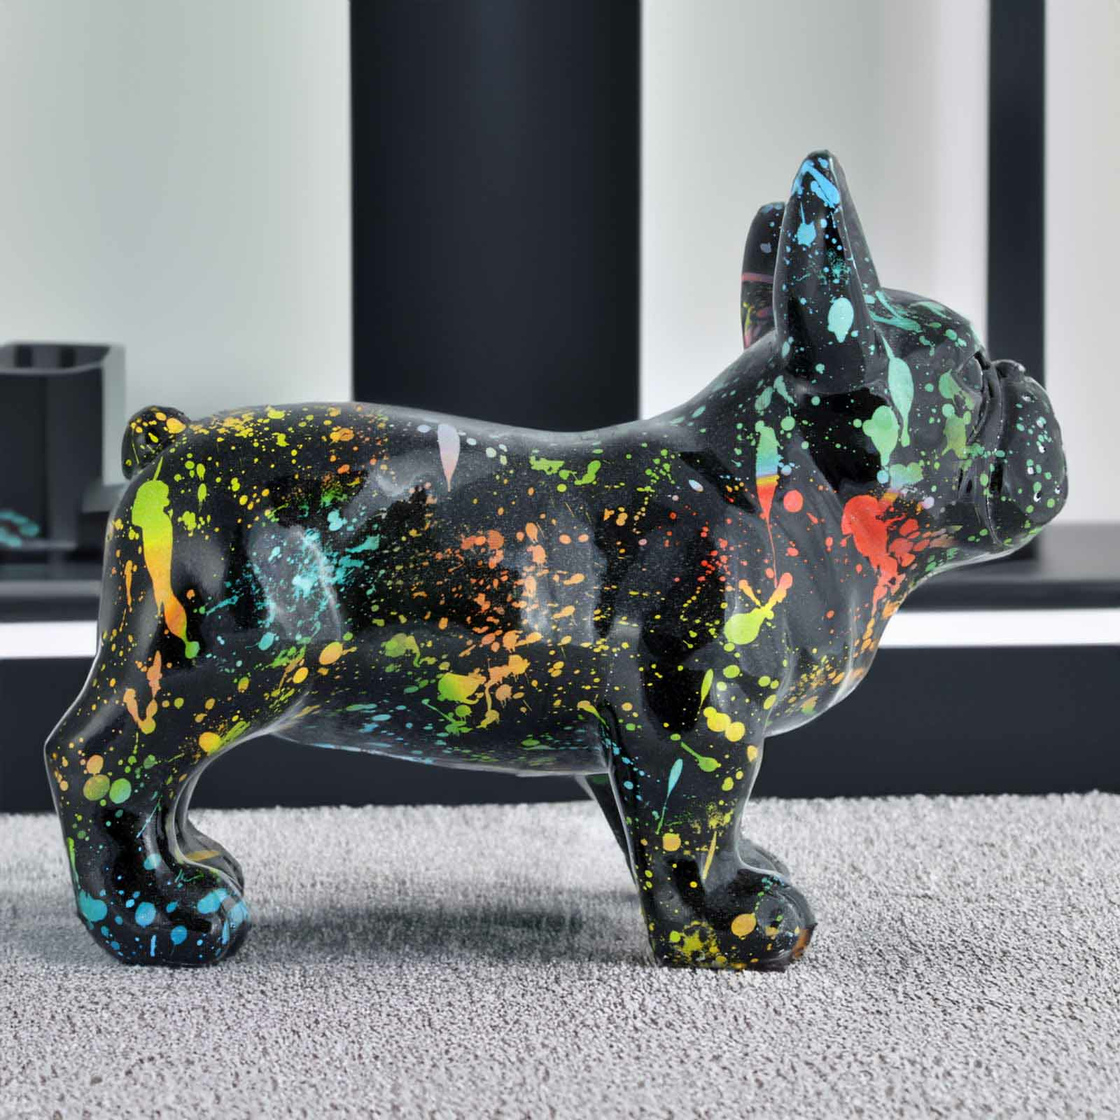 Französische Bulldogge Hund Figur Statue Werbefigur groß Fan Deko neu xxl  kaufen bei